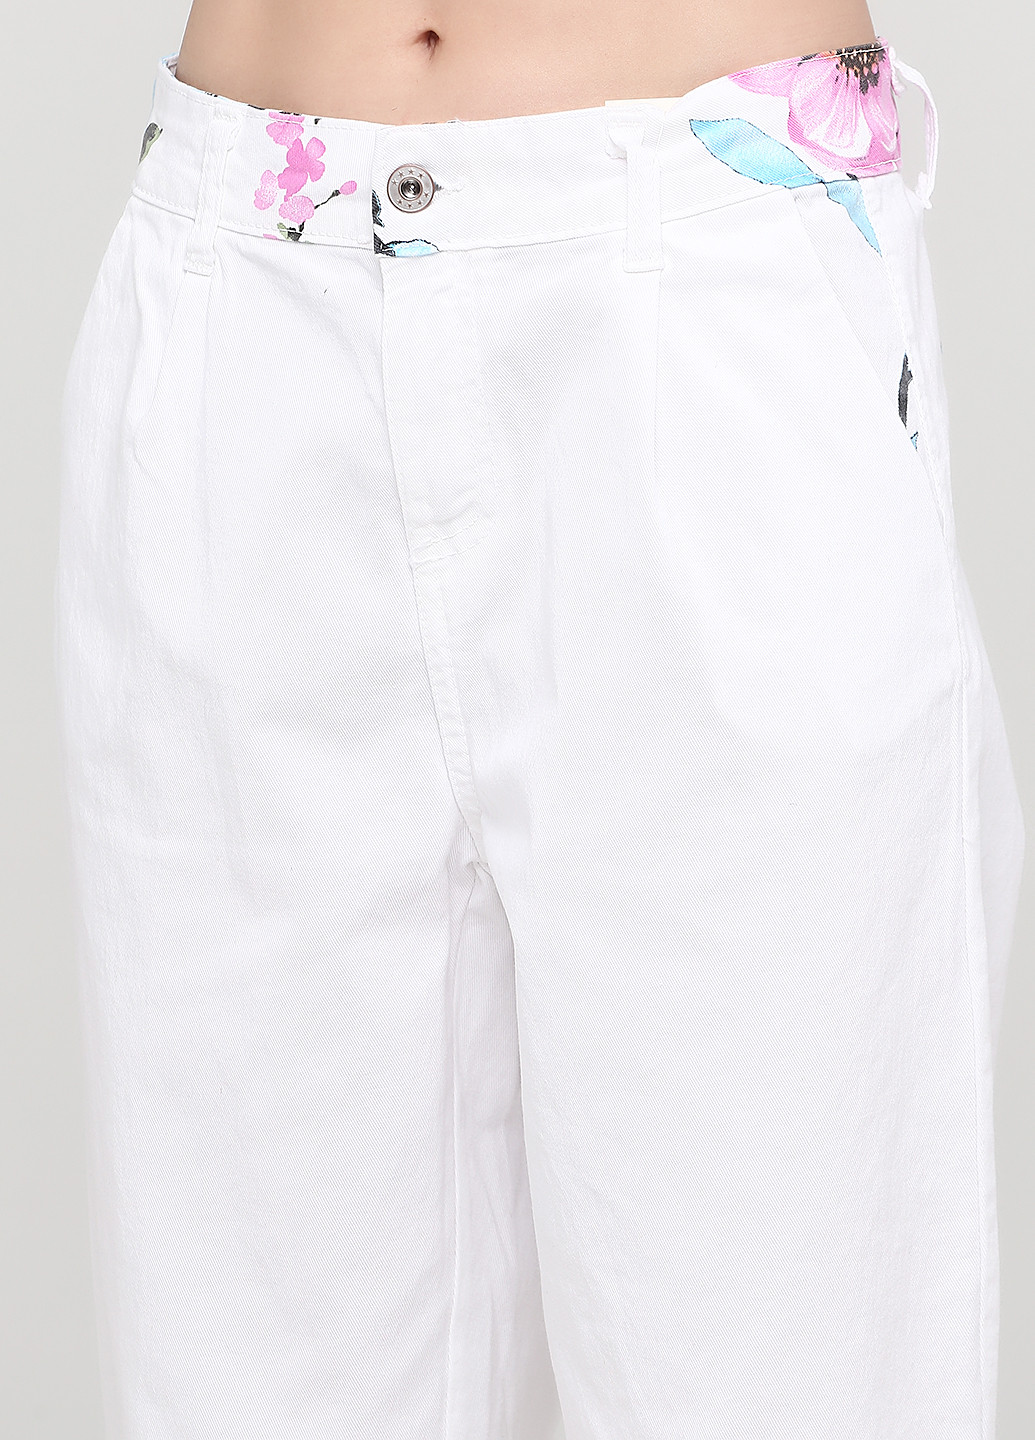 Костюм (куртка, брюки) New Collection брючный цветочный белый джинсовый хлопок